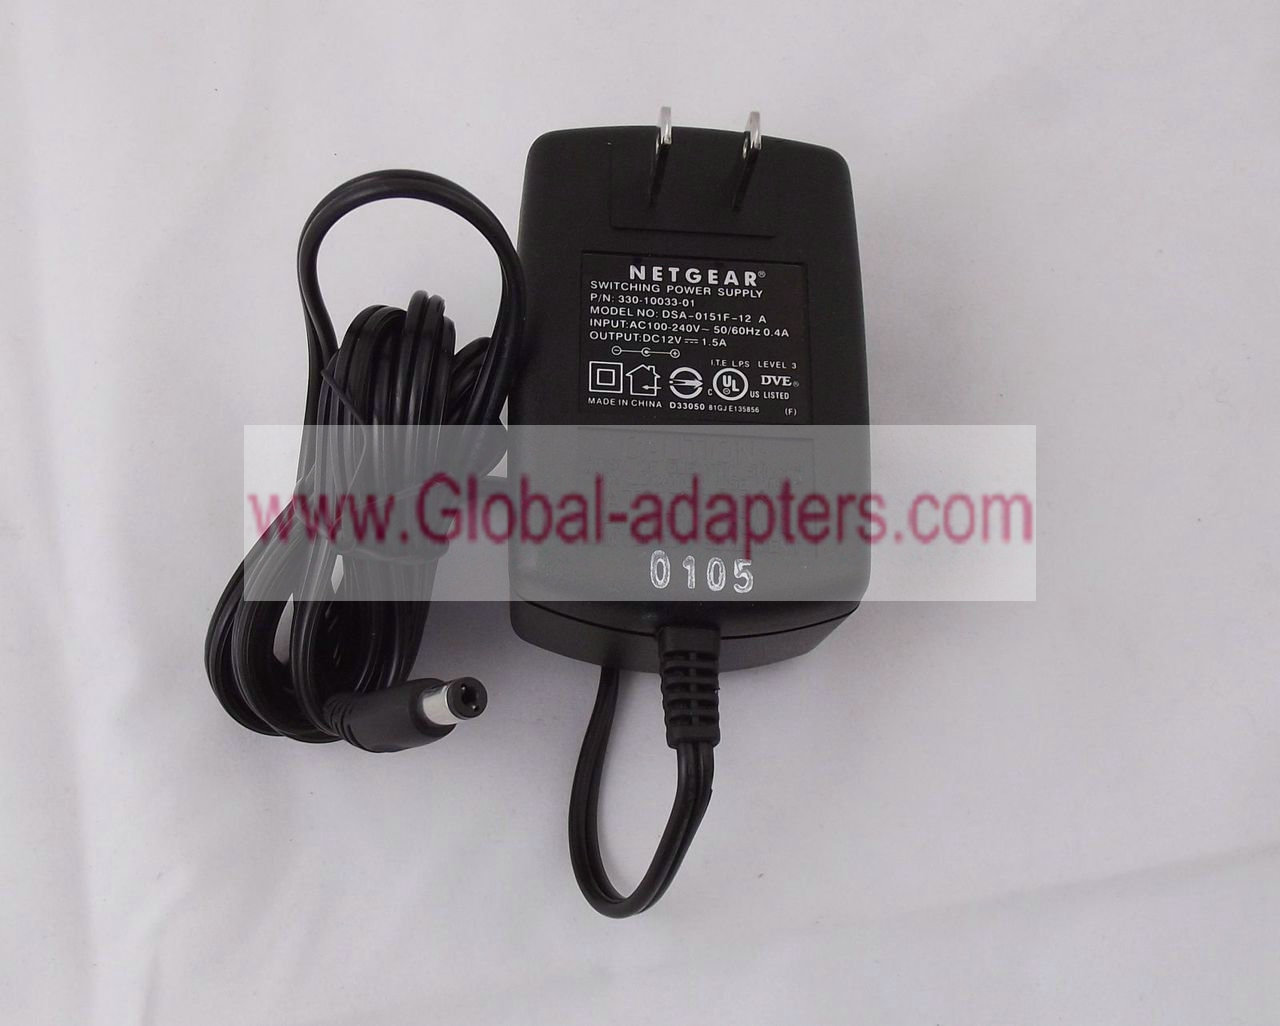 NETGEAR DSA-0151F-12 A 330-10033-01 Power Adapter 12V 1.5A 4.0mm x 1.7mm - Click Image to Close